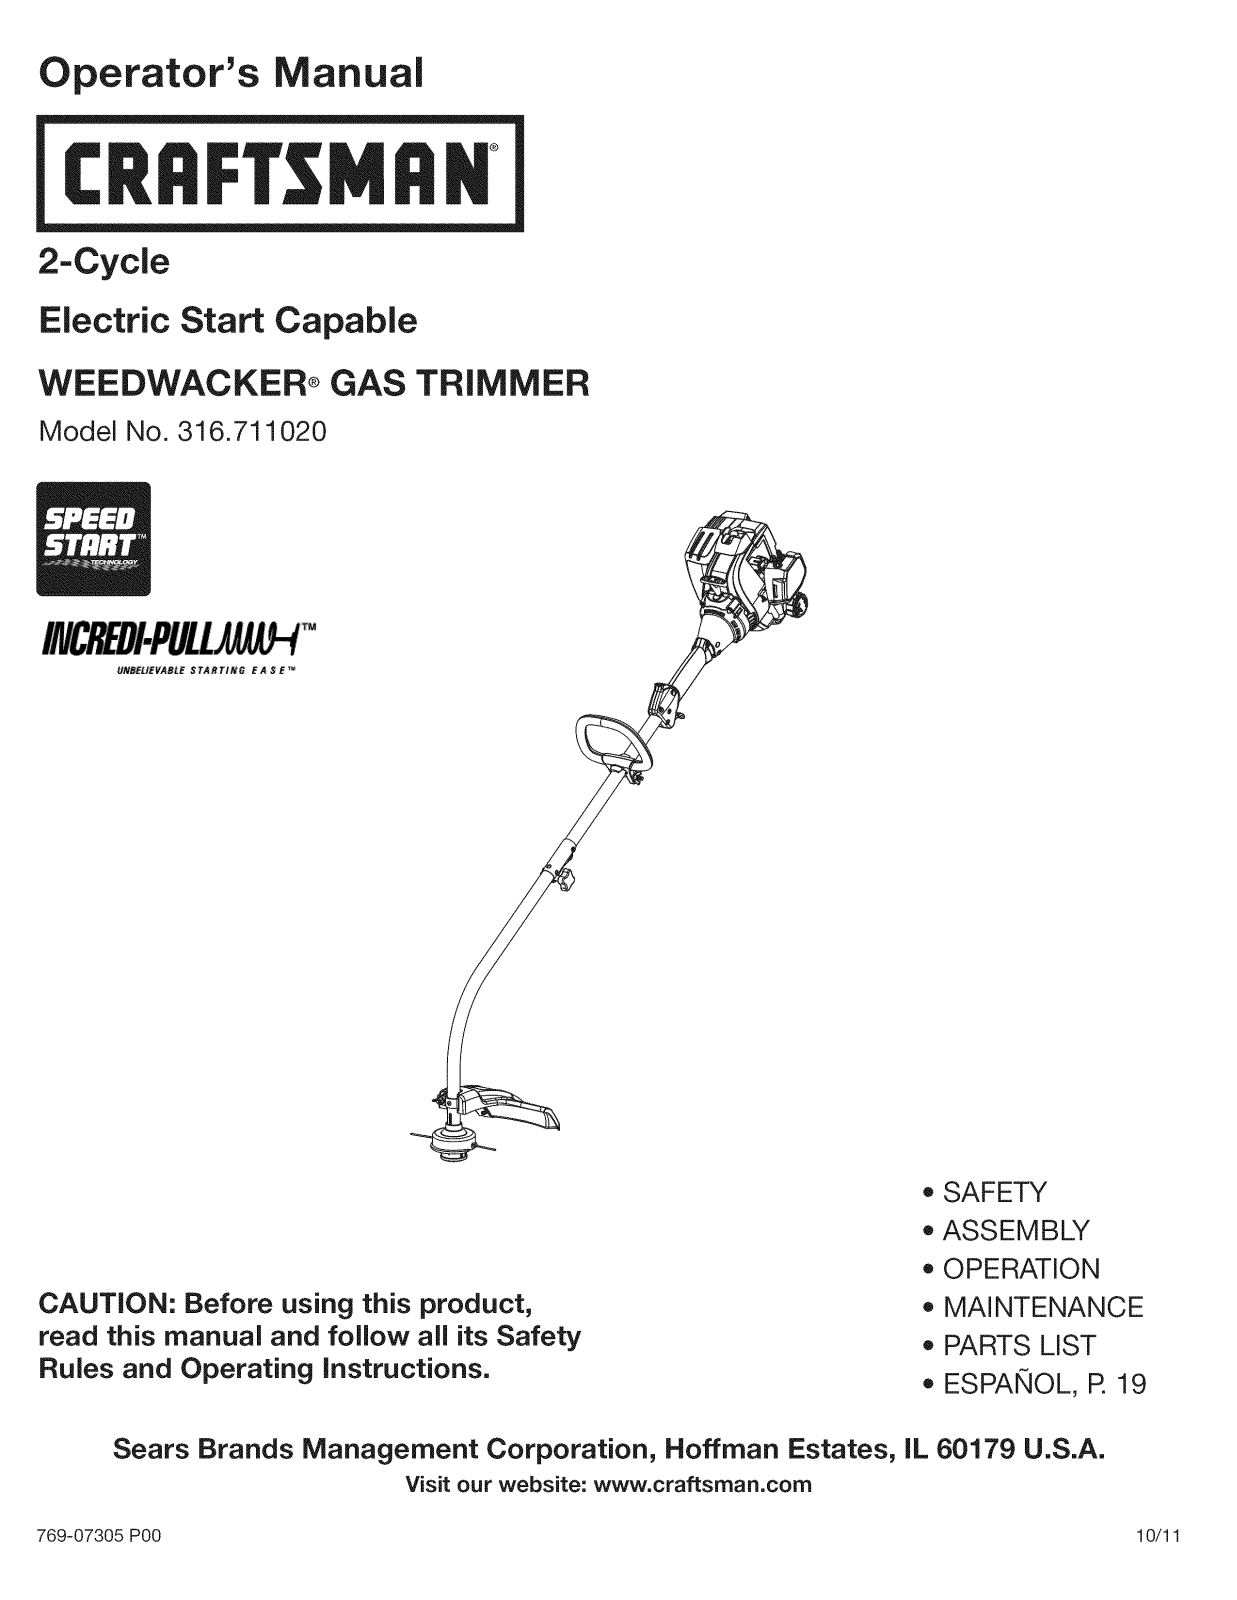 Craftsman 316.711020 User Manual